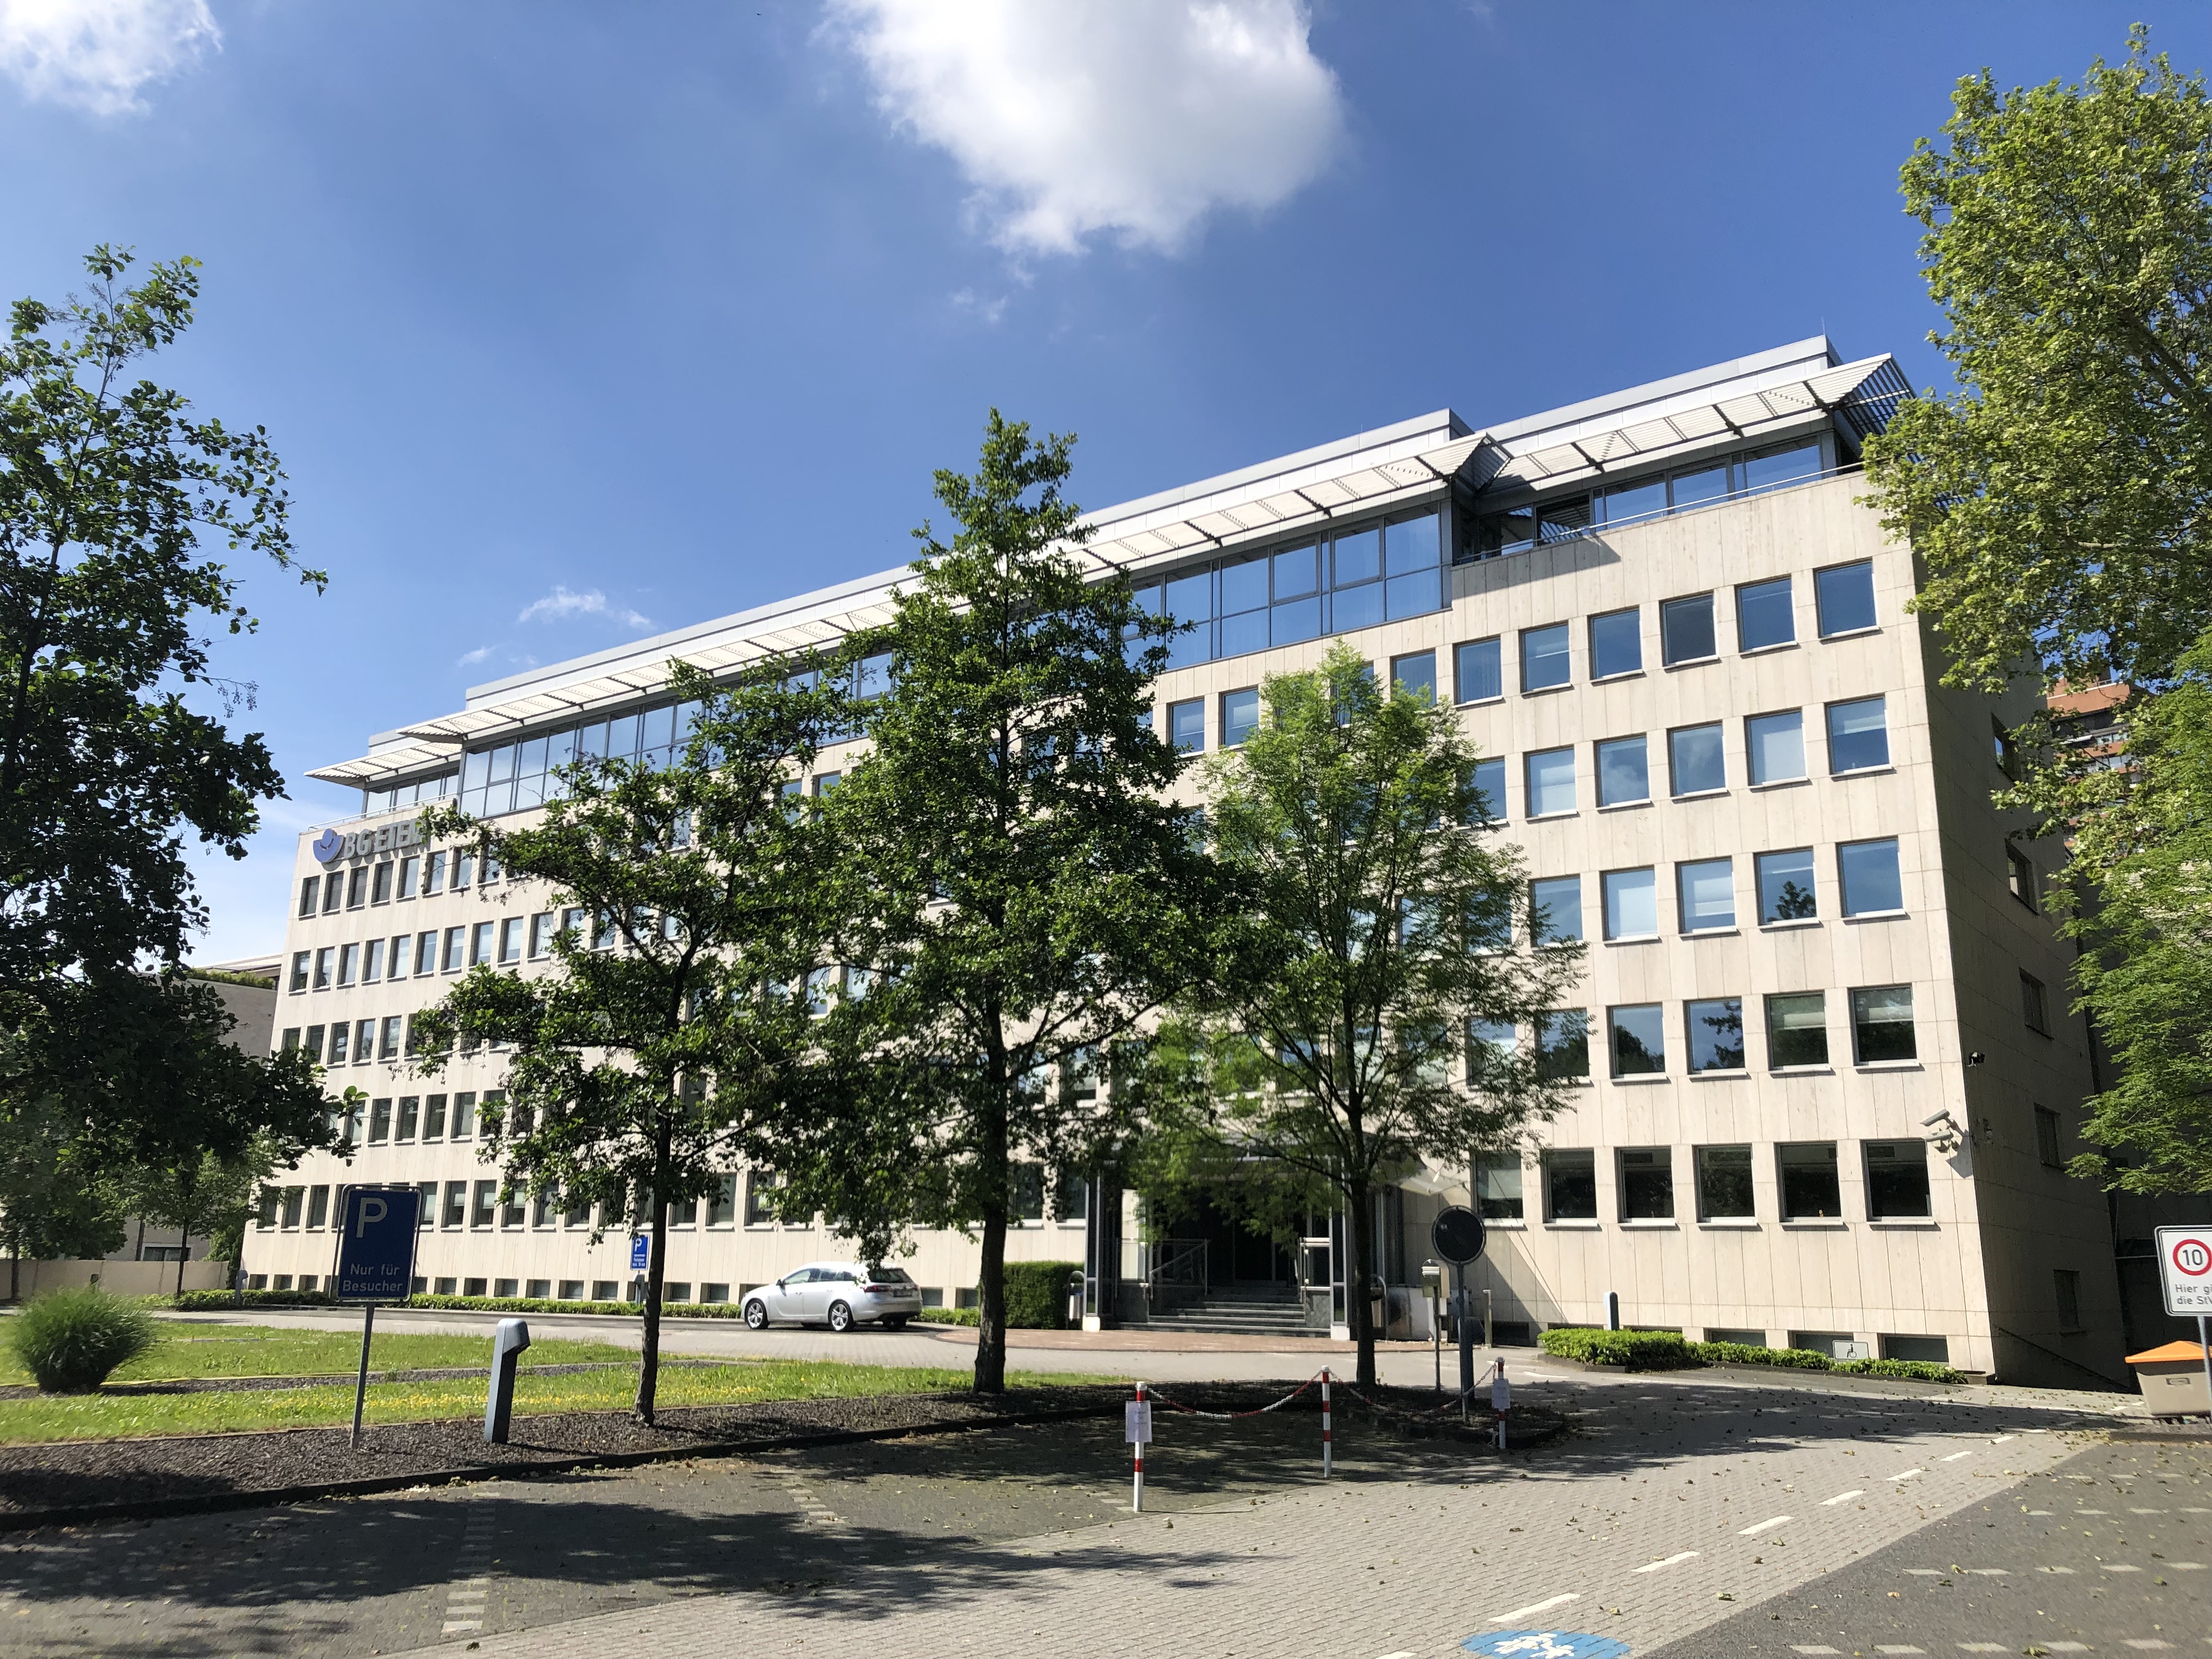 Hauptverwaltung der Berufsgenossenschaft Energie Textil Elektro Medienerzeugnisse am Gustav-Heinemann-Ufer in Köln